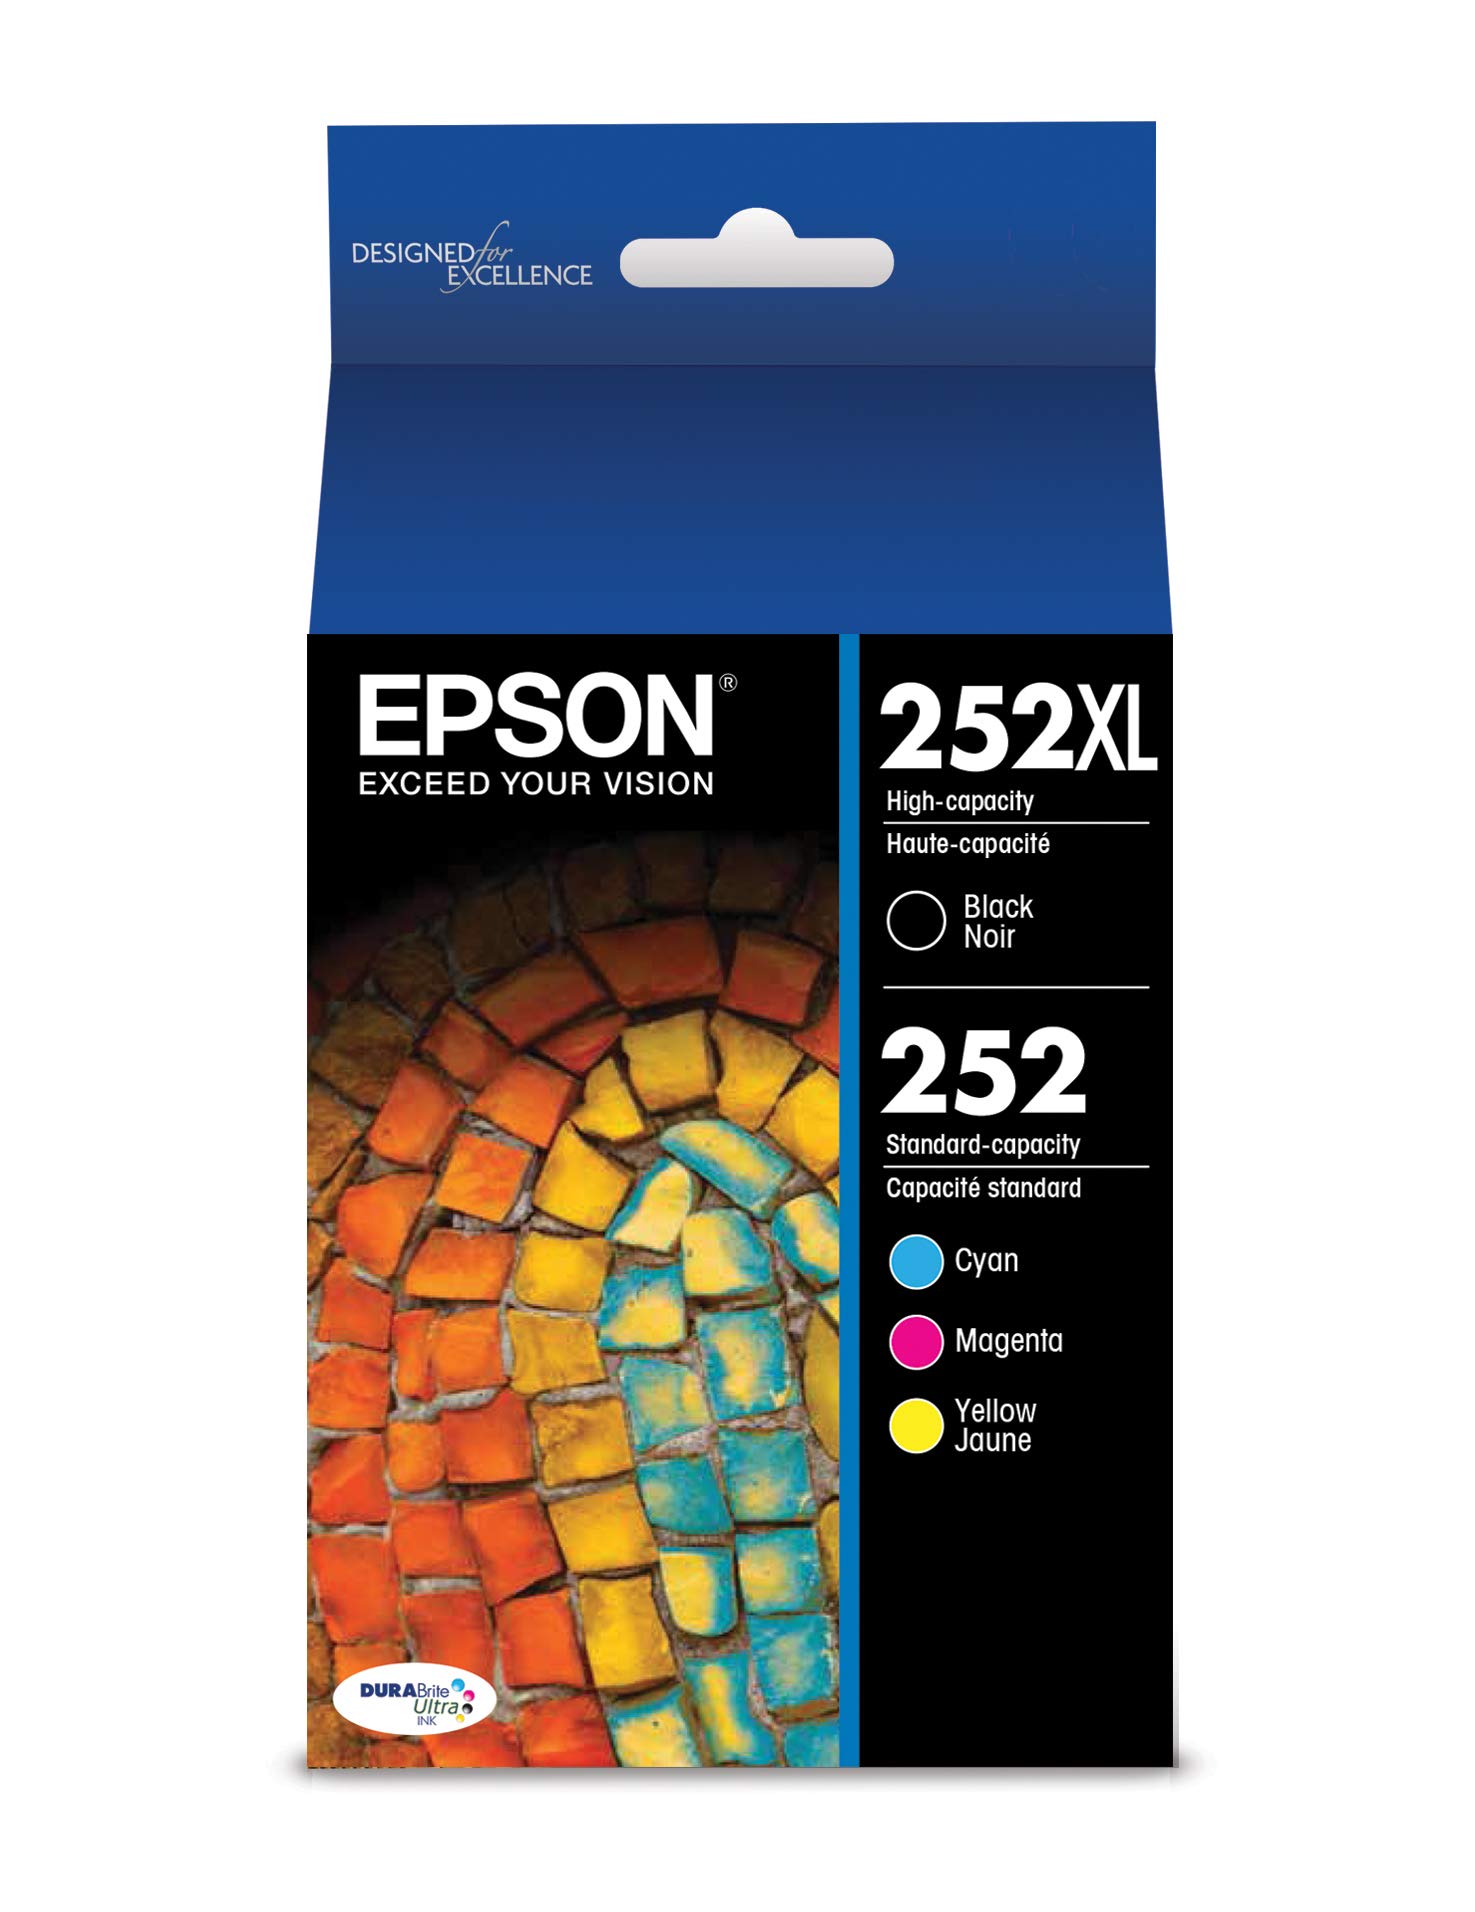 Epson 252XL/252 高収量ブラックおよび標準収量シアン/マゼンタ/イエロー インク カートリッジ、...